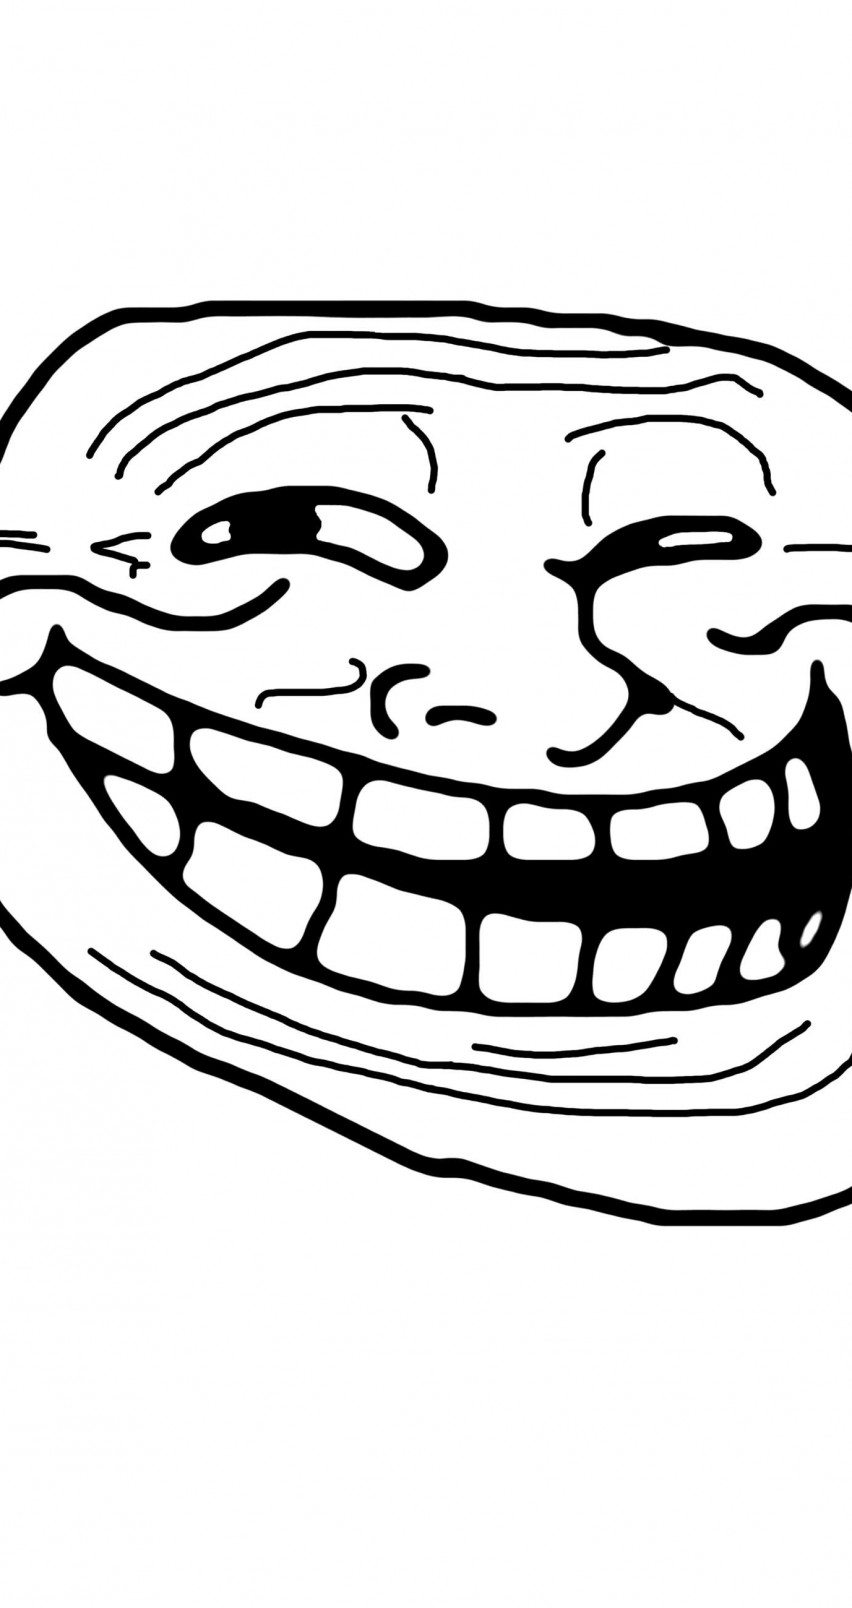 Troll Face Meme Wallpaper for Apple iPhone 6 / 6s